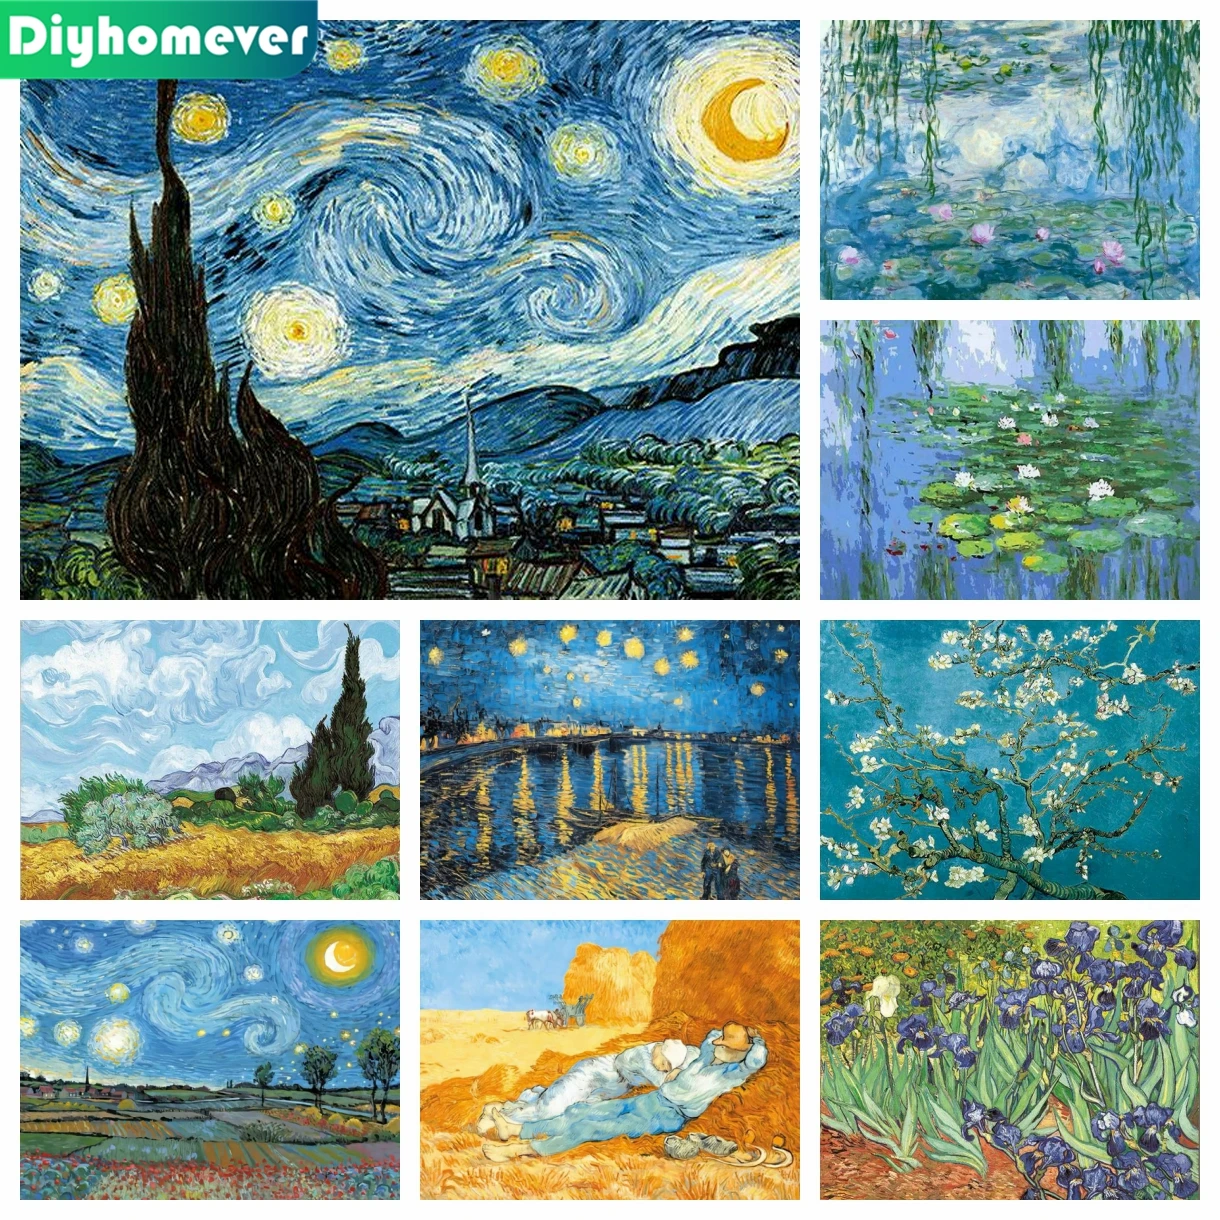 Pintura al óleo de Van Gogh 5D DIY, mosaico bordado de noche estrellada, imagen de punto de cruz redondo, Cuadrado completo, decoración del hogar